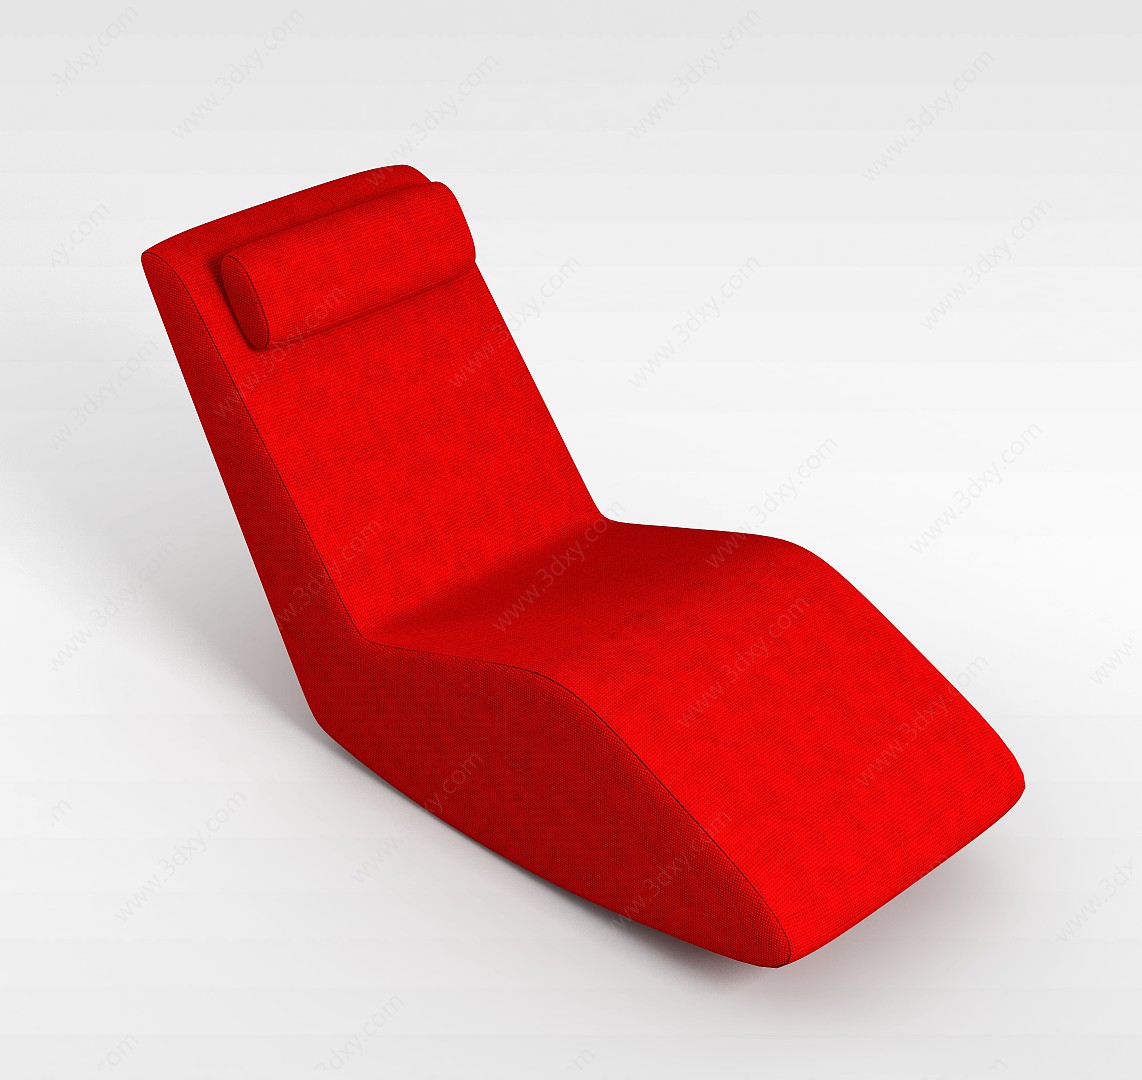 创意休闲椅子3D模型